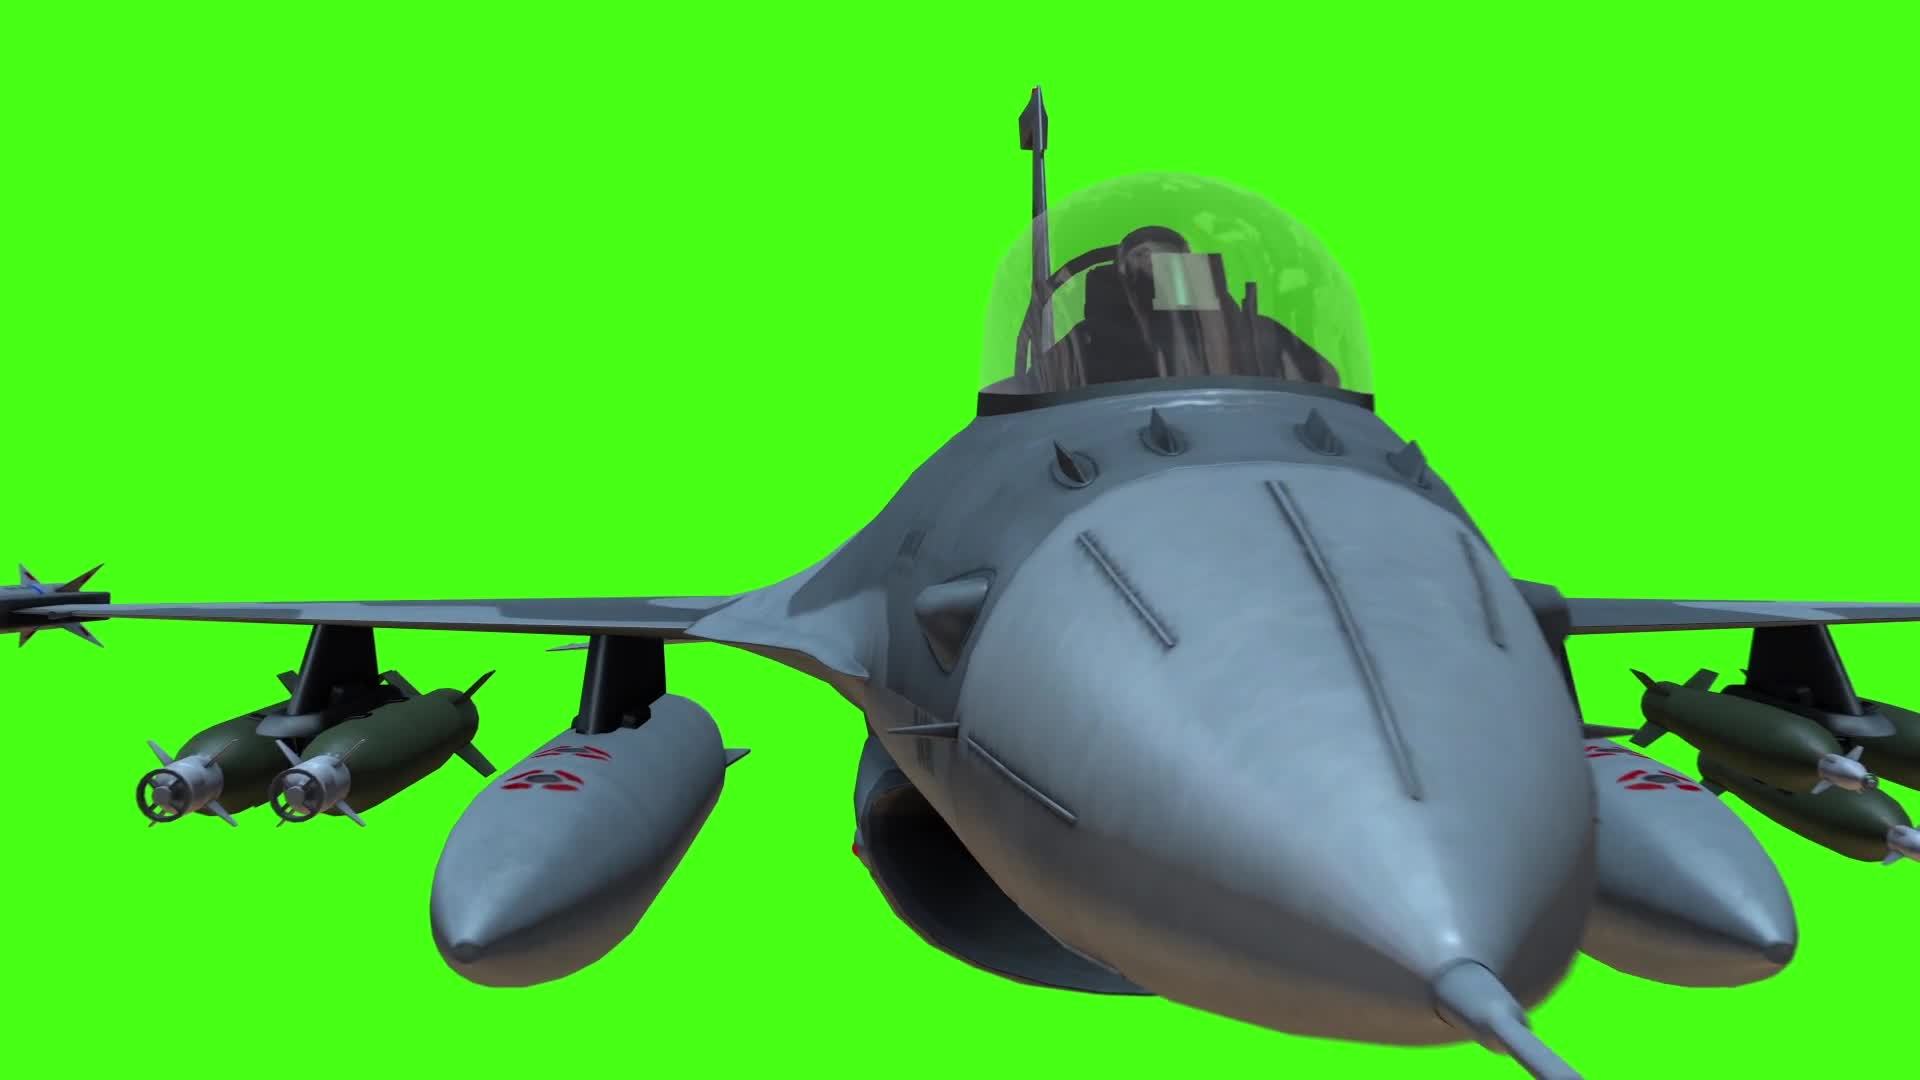 Bạn là một fan cuồng của máy bay chiến đấu màu xanh? Hãy đến với chúng tôi và tận hưởng ngay clip nền máy bay chiến đấu màu xanh cho Kinemaster. Với chất lượng hình ảnh sắc nét và siêu thực, chắc chắn bạn sẽ cảm thấy như mình thực sự đang trong buổi diễn tập của không quân. Truy cập ngay để khám phá!